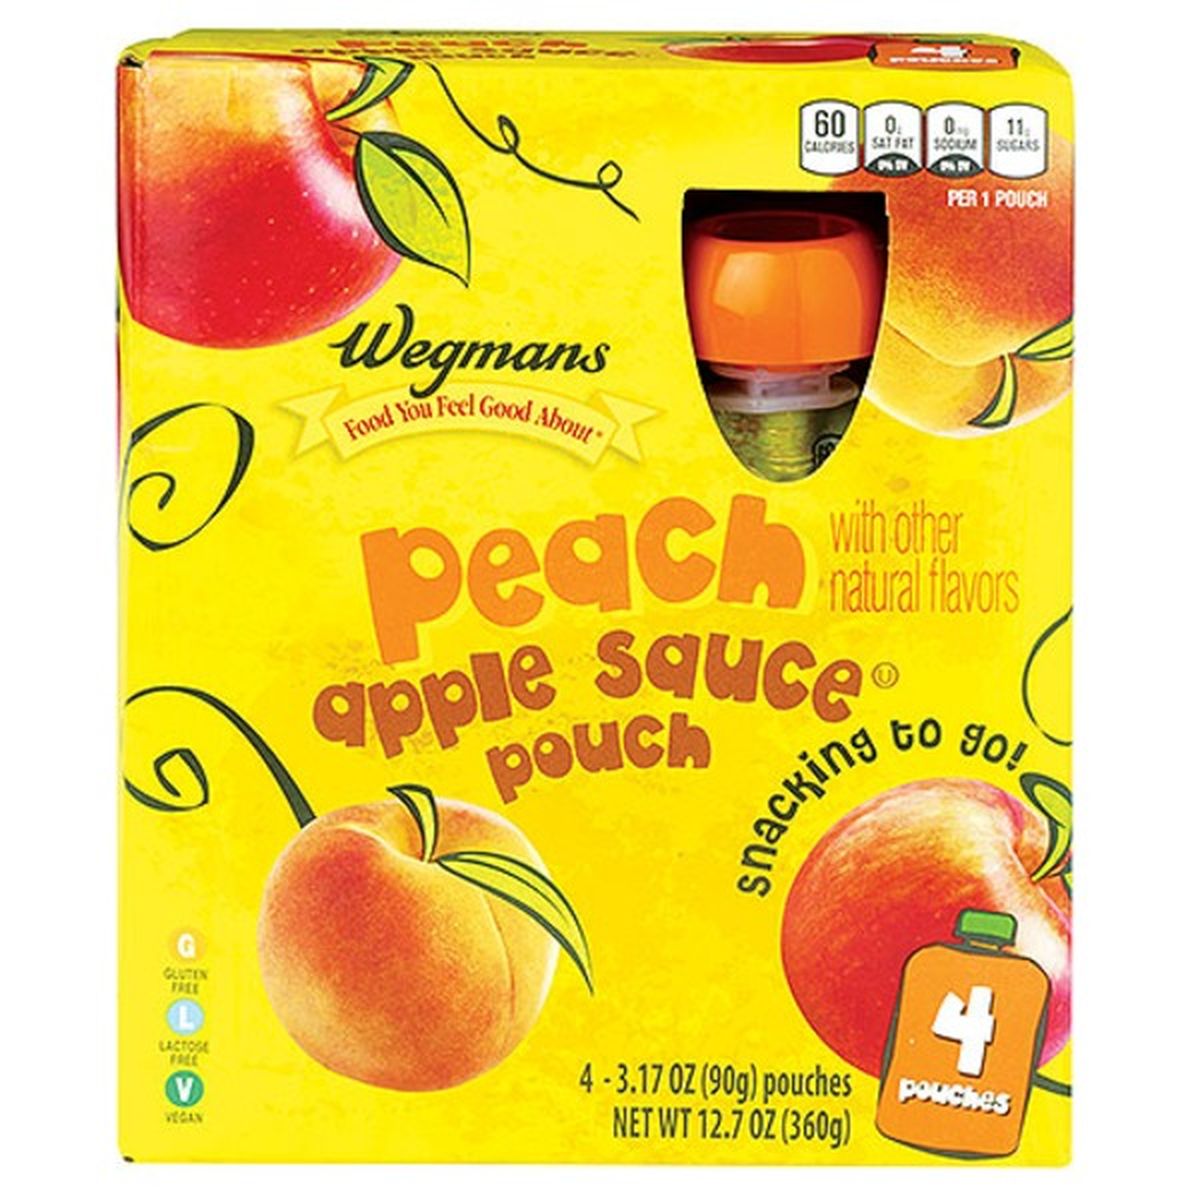 Calories in Wegmans Peach Apple Sauce Pouches